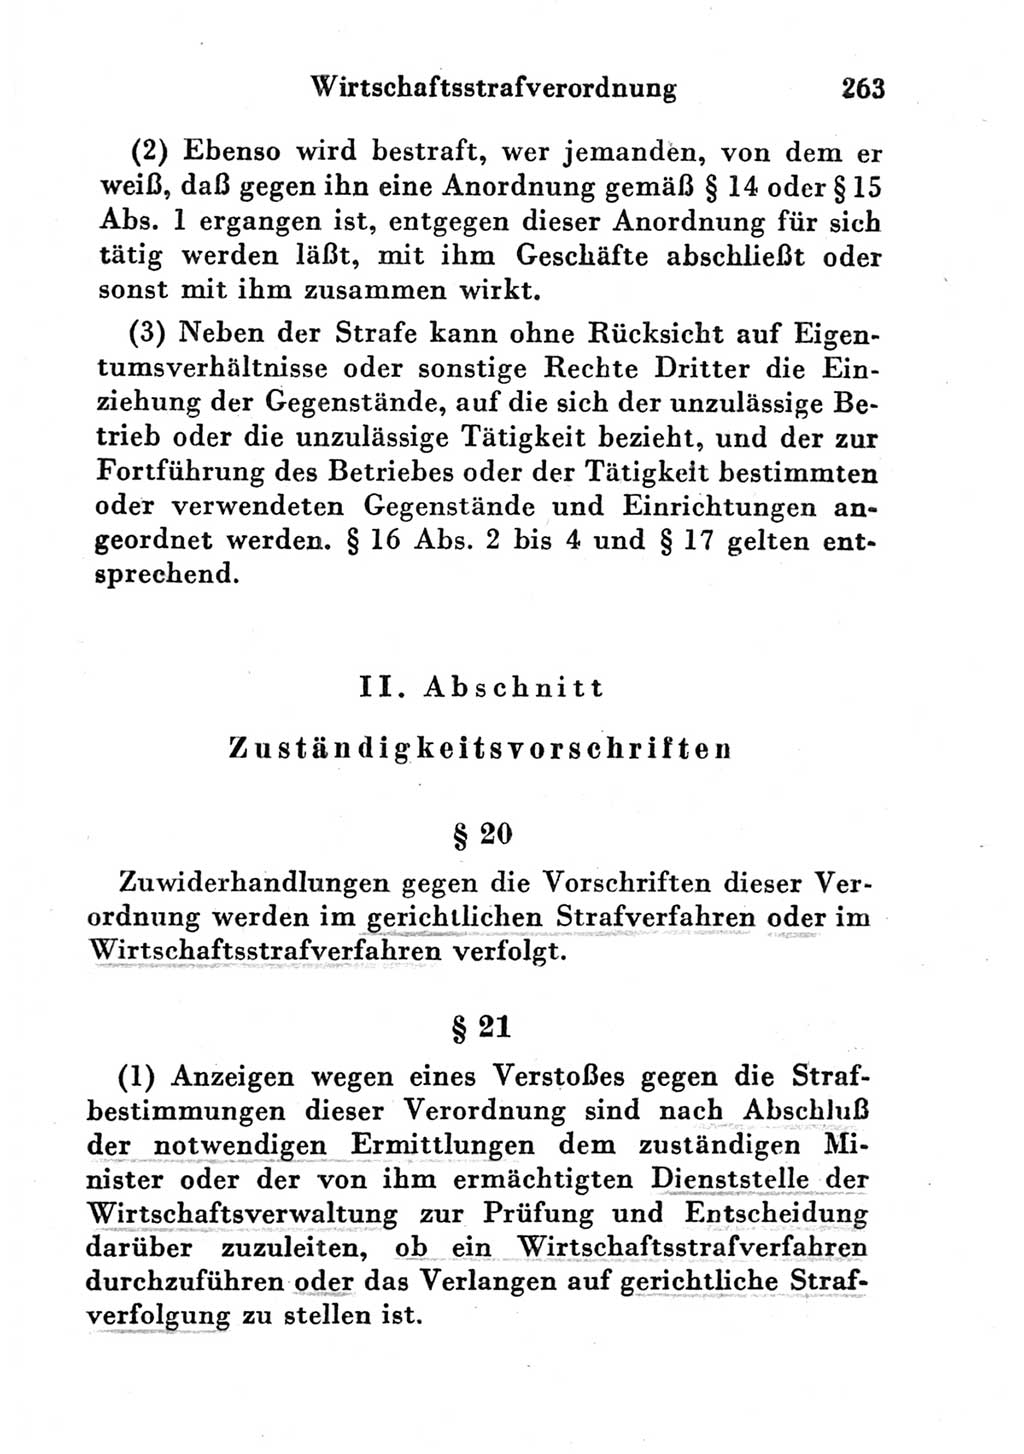 Strafgesetzbuch (StGB) und andere Strafgesetze [Deutsche Demokratische Republik (DDR)] 1951, Seite 263 (StGB Strafges. DDR 1951, S. 263)